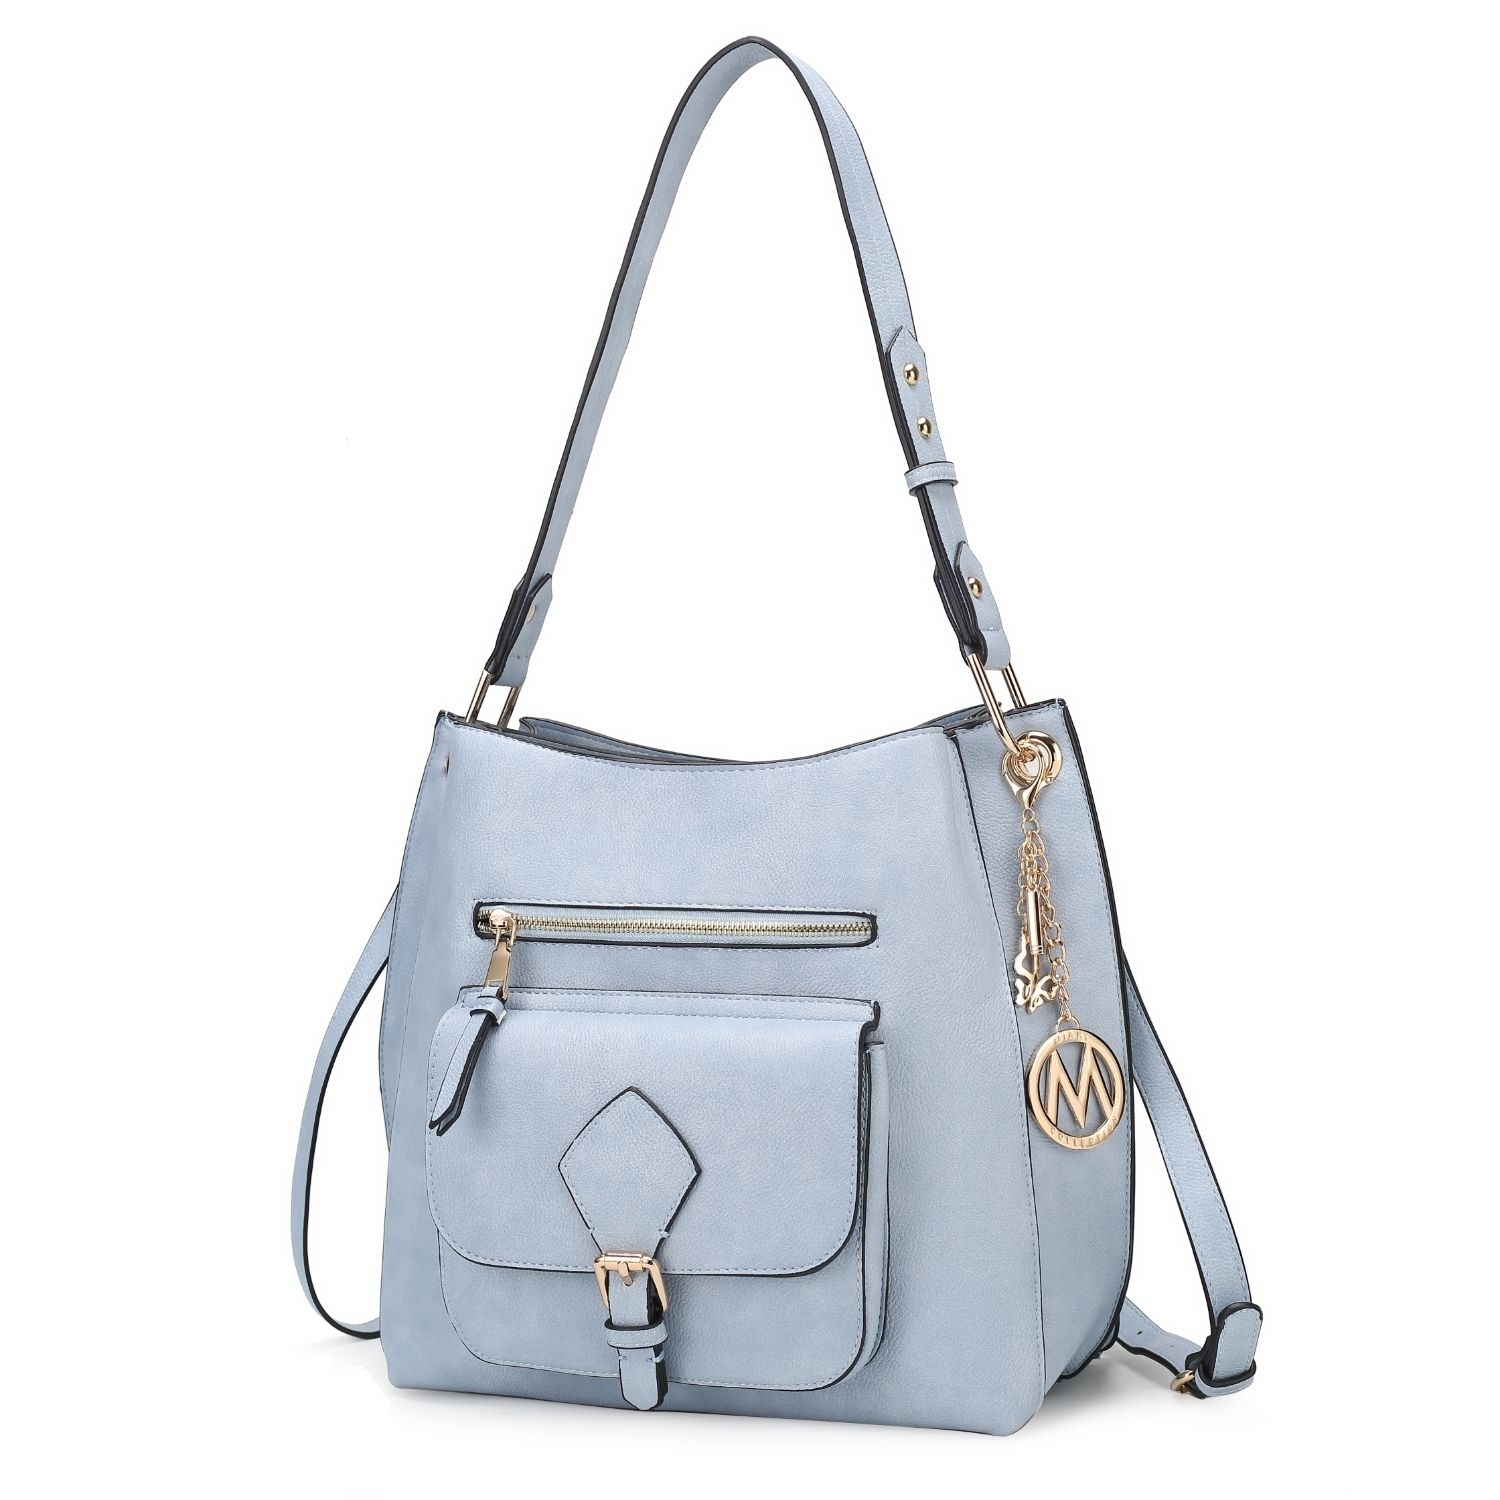 MKF Collection Yves Vegan Leather Women's Hobo Handbag By Mia K - Light Blue